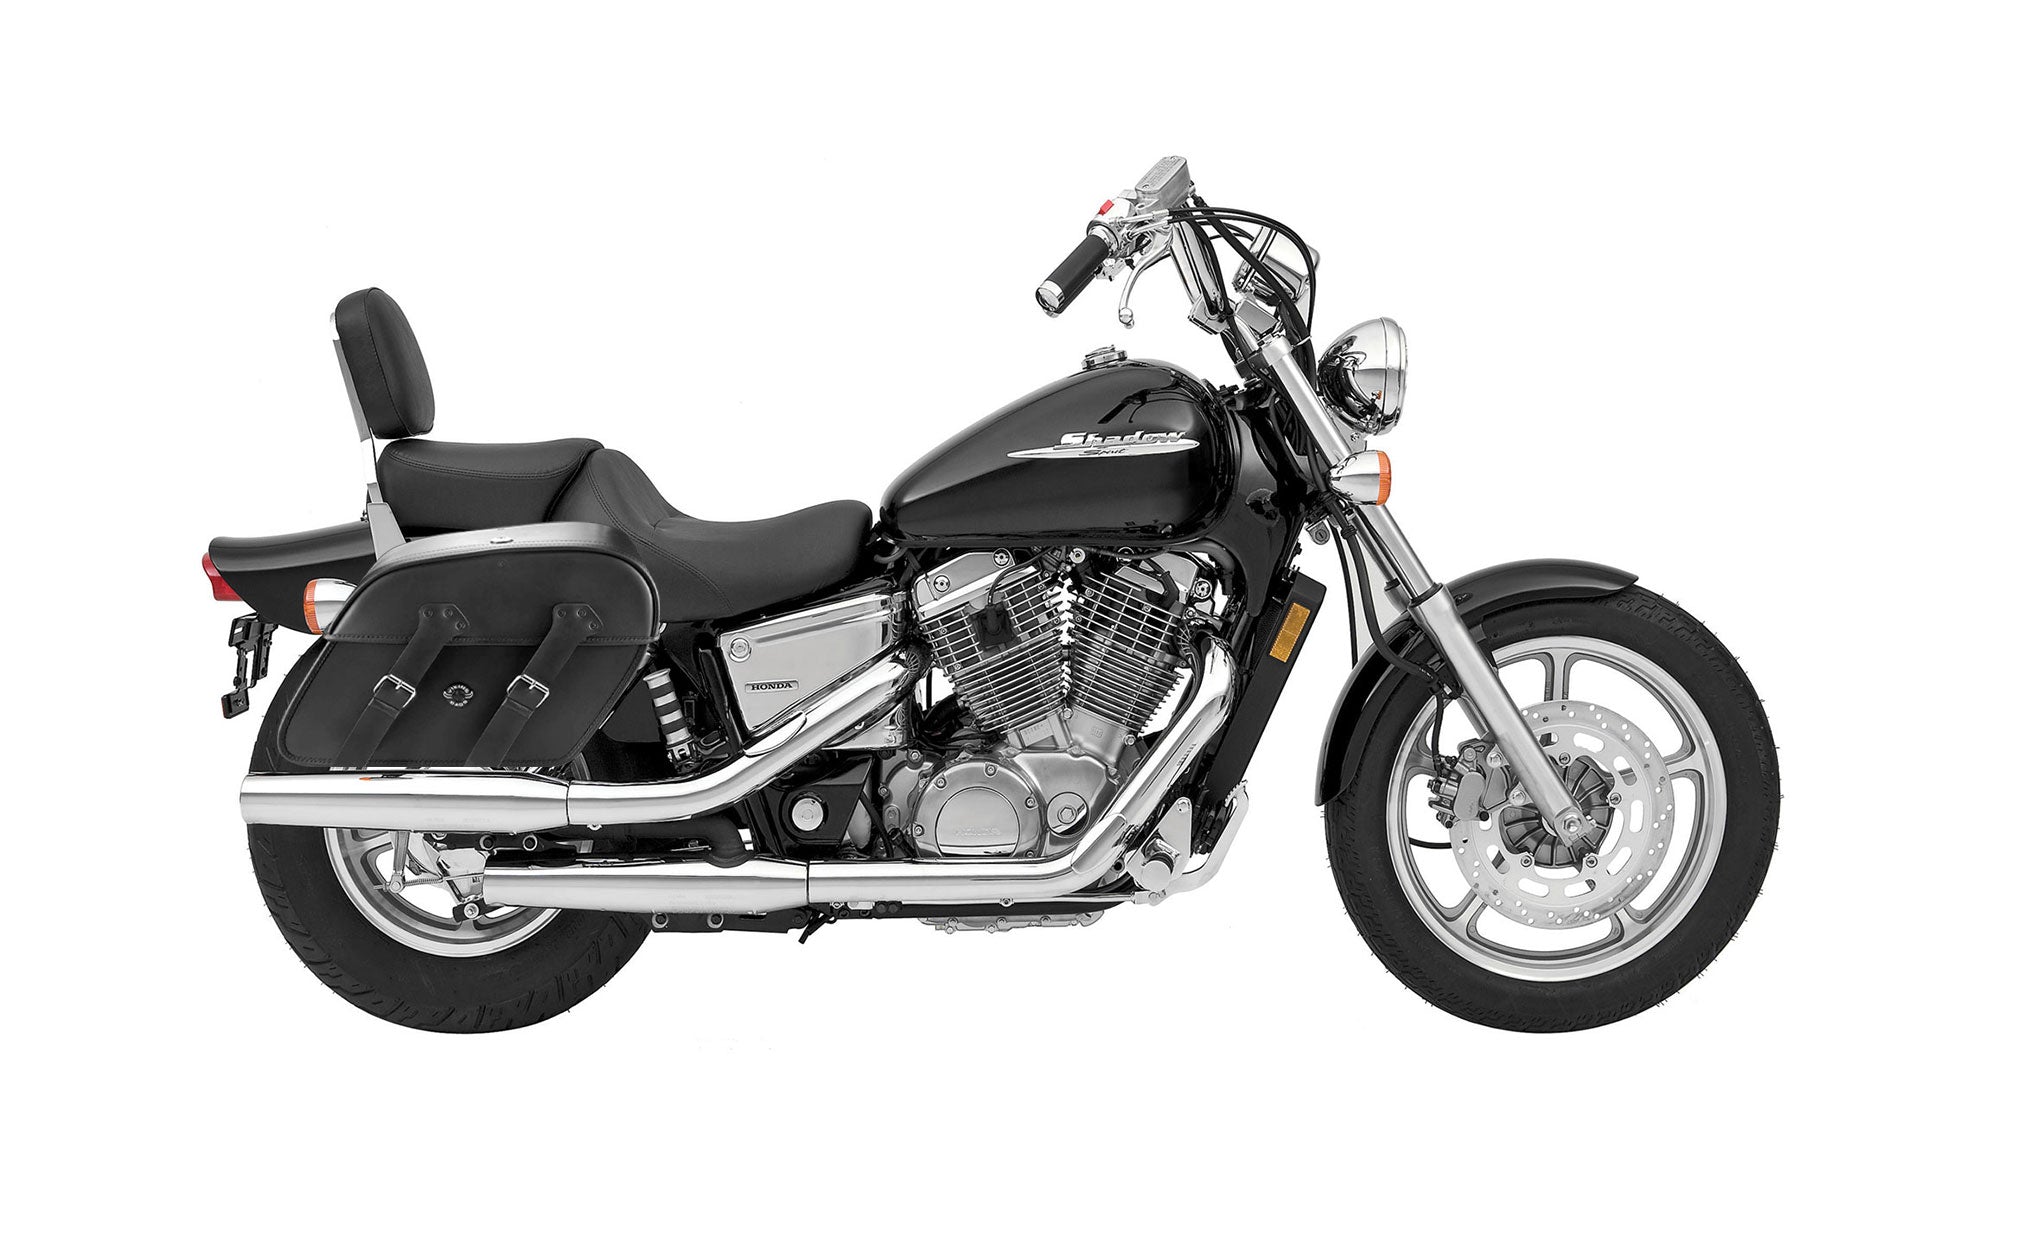 Viking Raven Extra Large Honda Shadow 1100 Spirit Shock Cut Out Leather Motorcycle Saddlebags on Bike Photo @expand